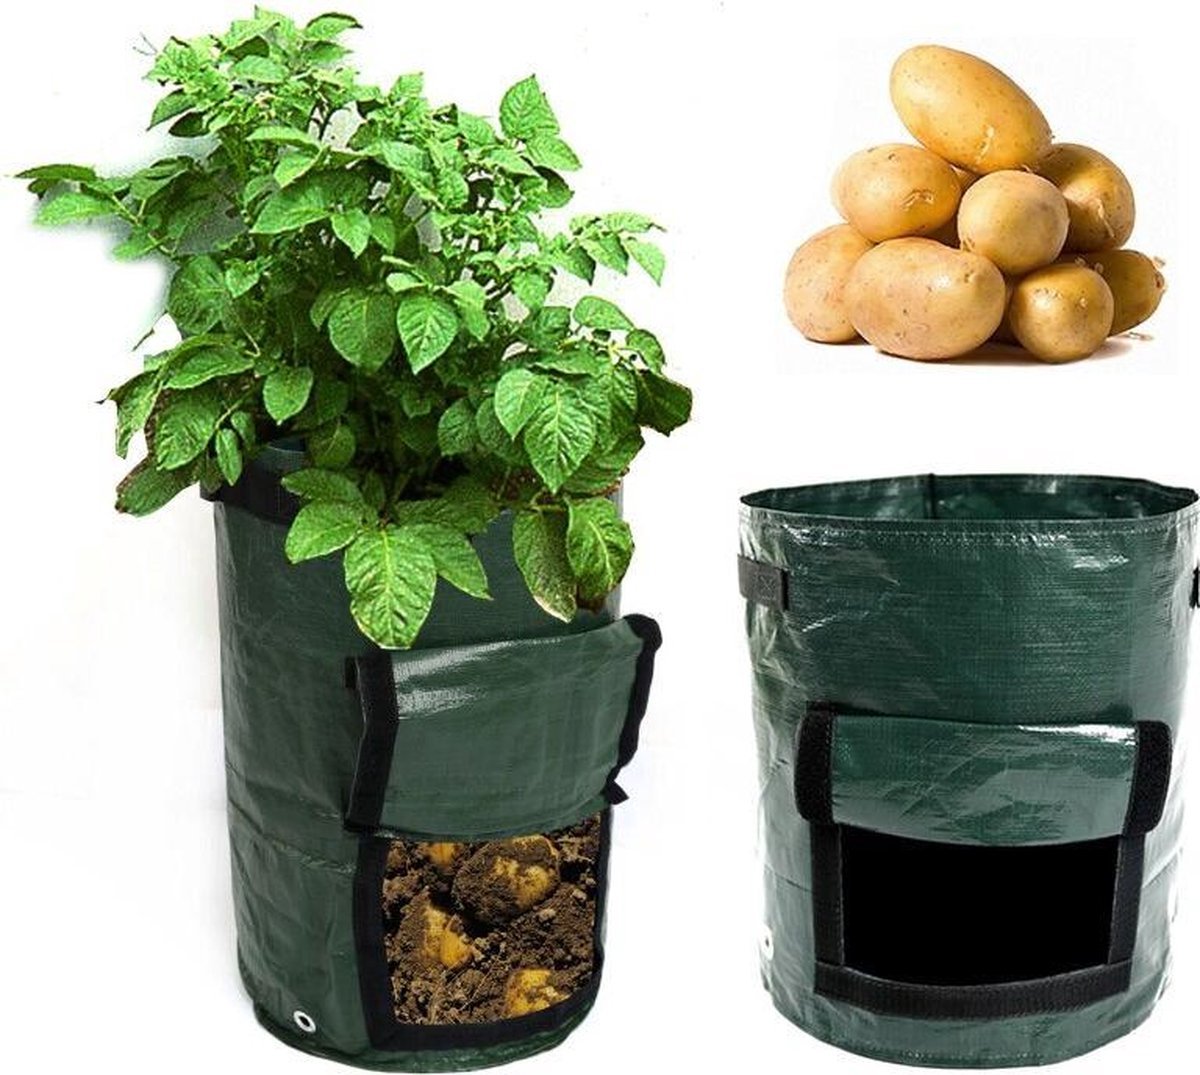 Winkrs 2x Kweekzak Growbag Grow Bag voor aardappels , groenten en planten - Groeizakken set - 32 x 27CM